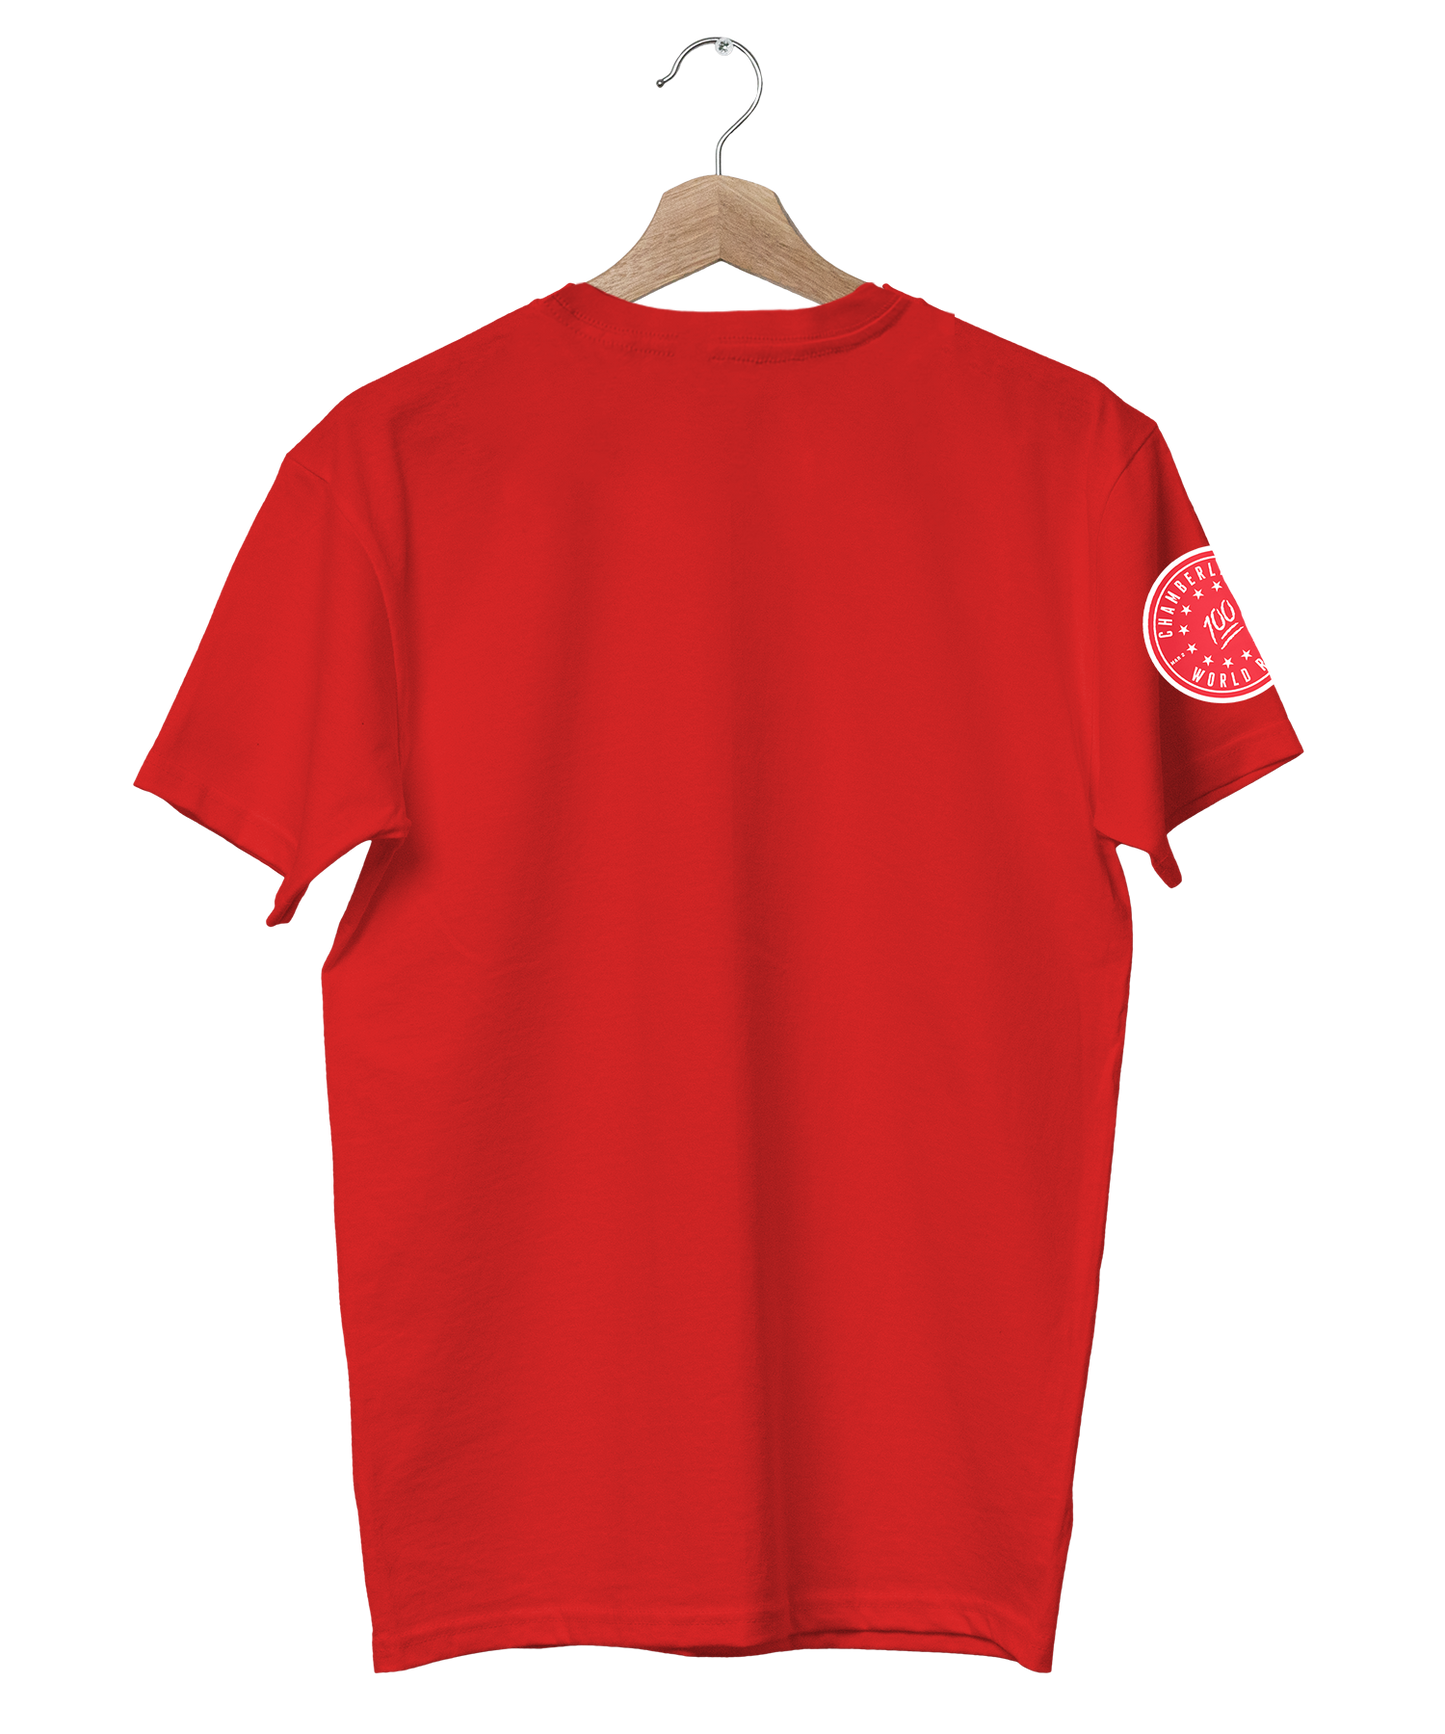 Wilt Chamberlain 100 T-Shirt Legends